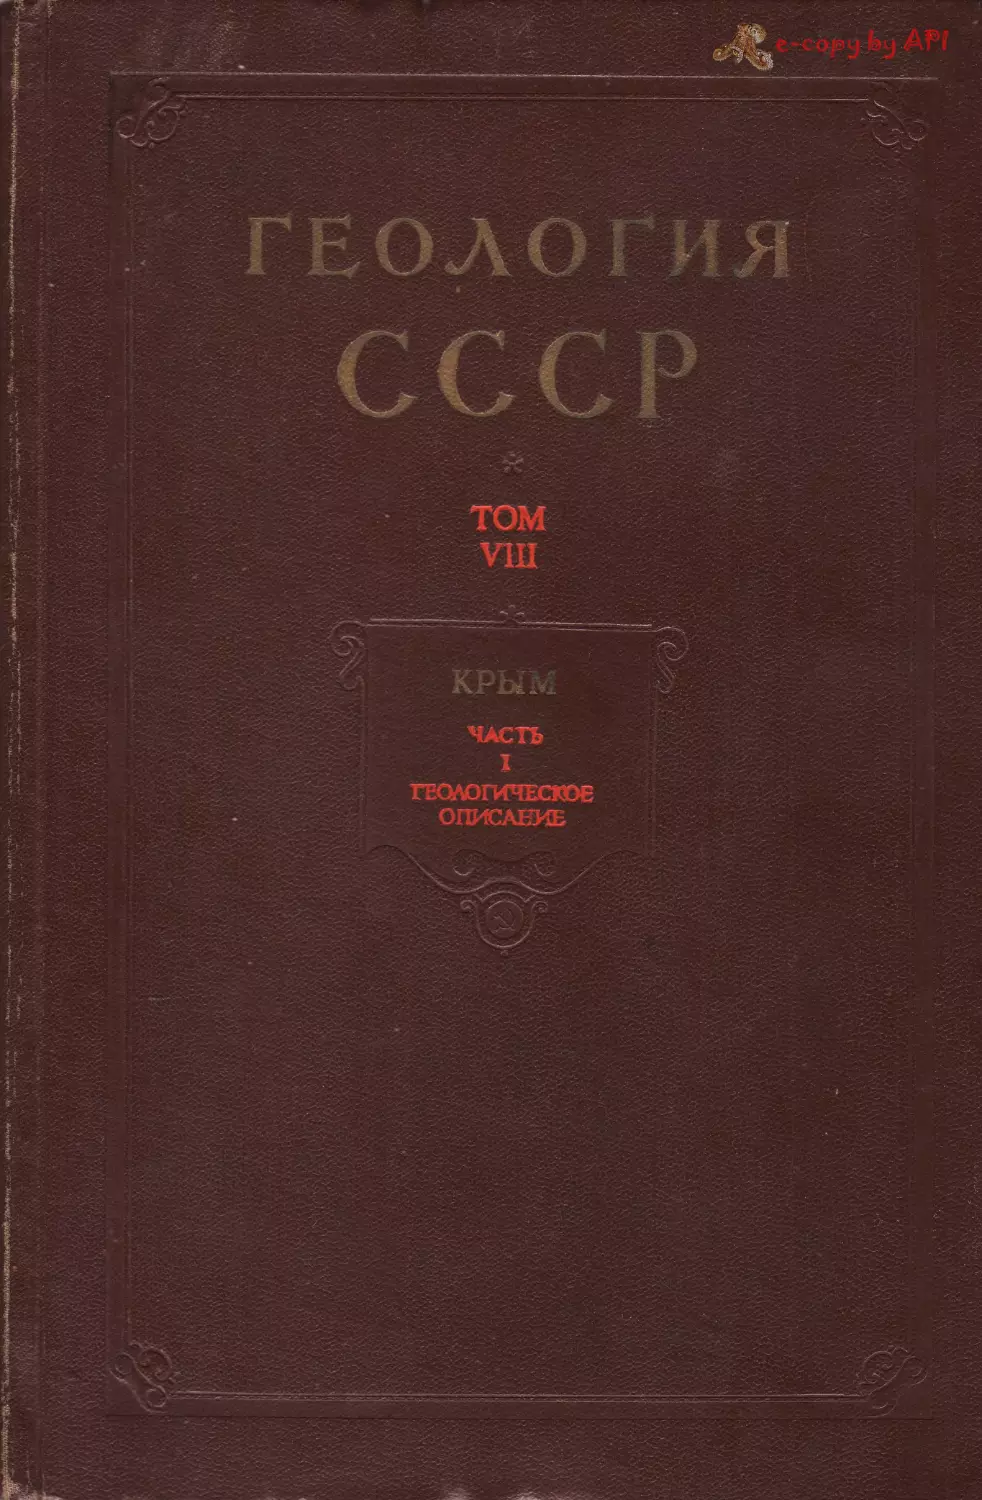 1969_геология ссср. том viii. крым. часть 1. геологическое описание_rec_1.djvu